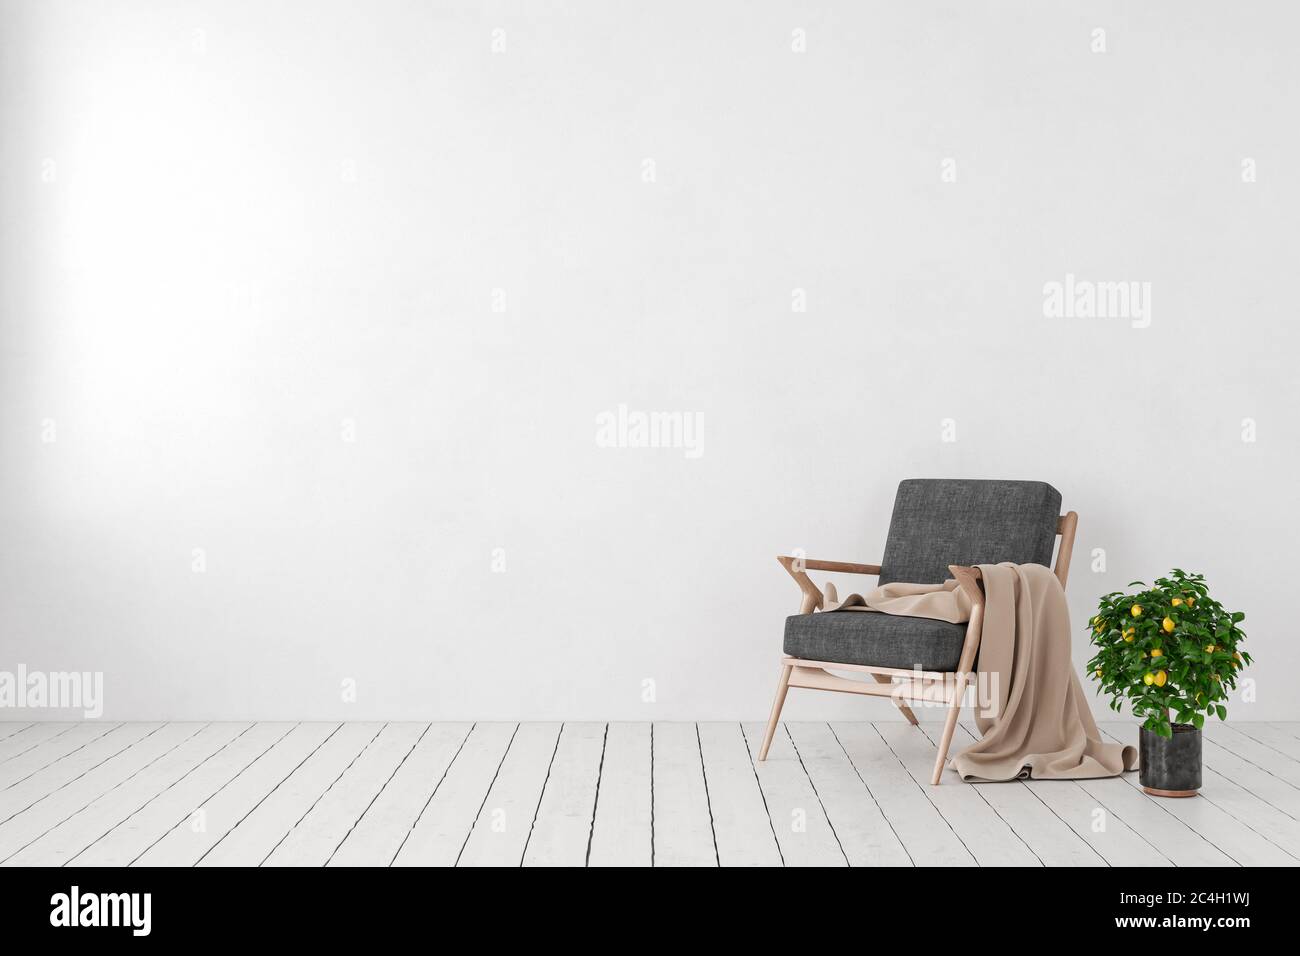 Interno bianco vuoto, parete vuota con poltrona, pianta limone albero. mockup dell'illustrazione di rendering 3d. Foto Stock